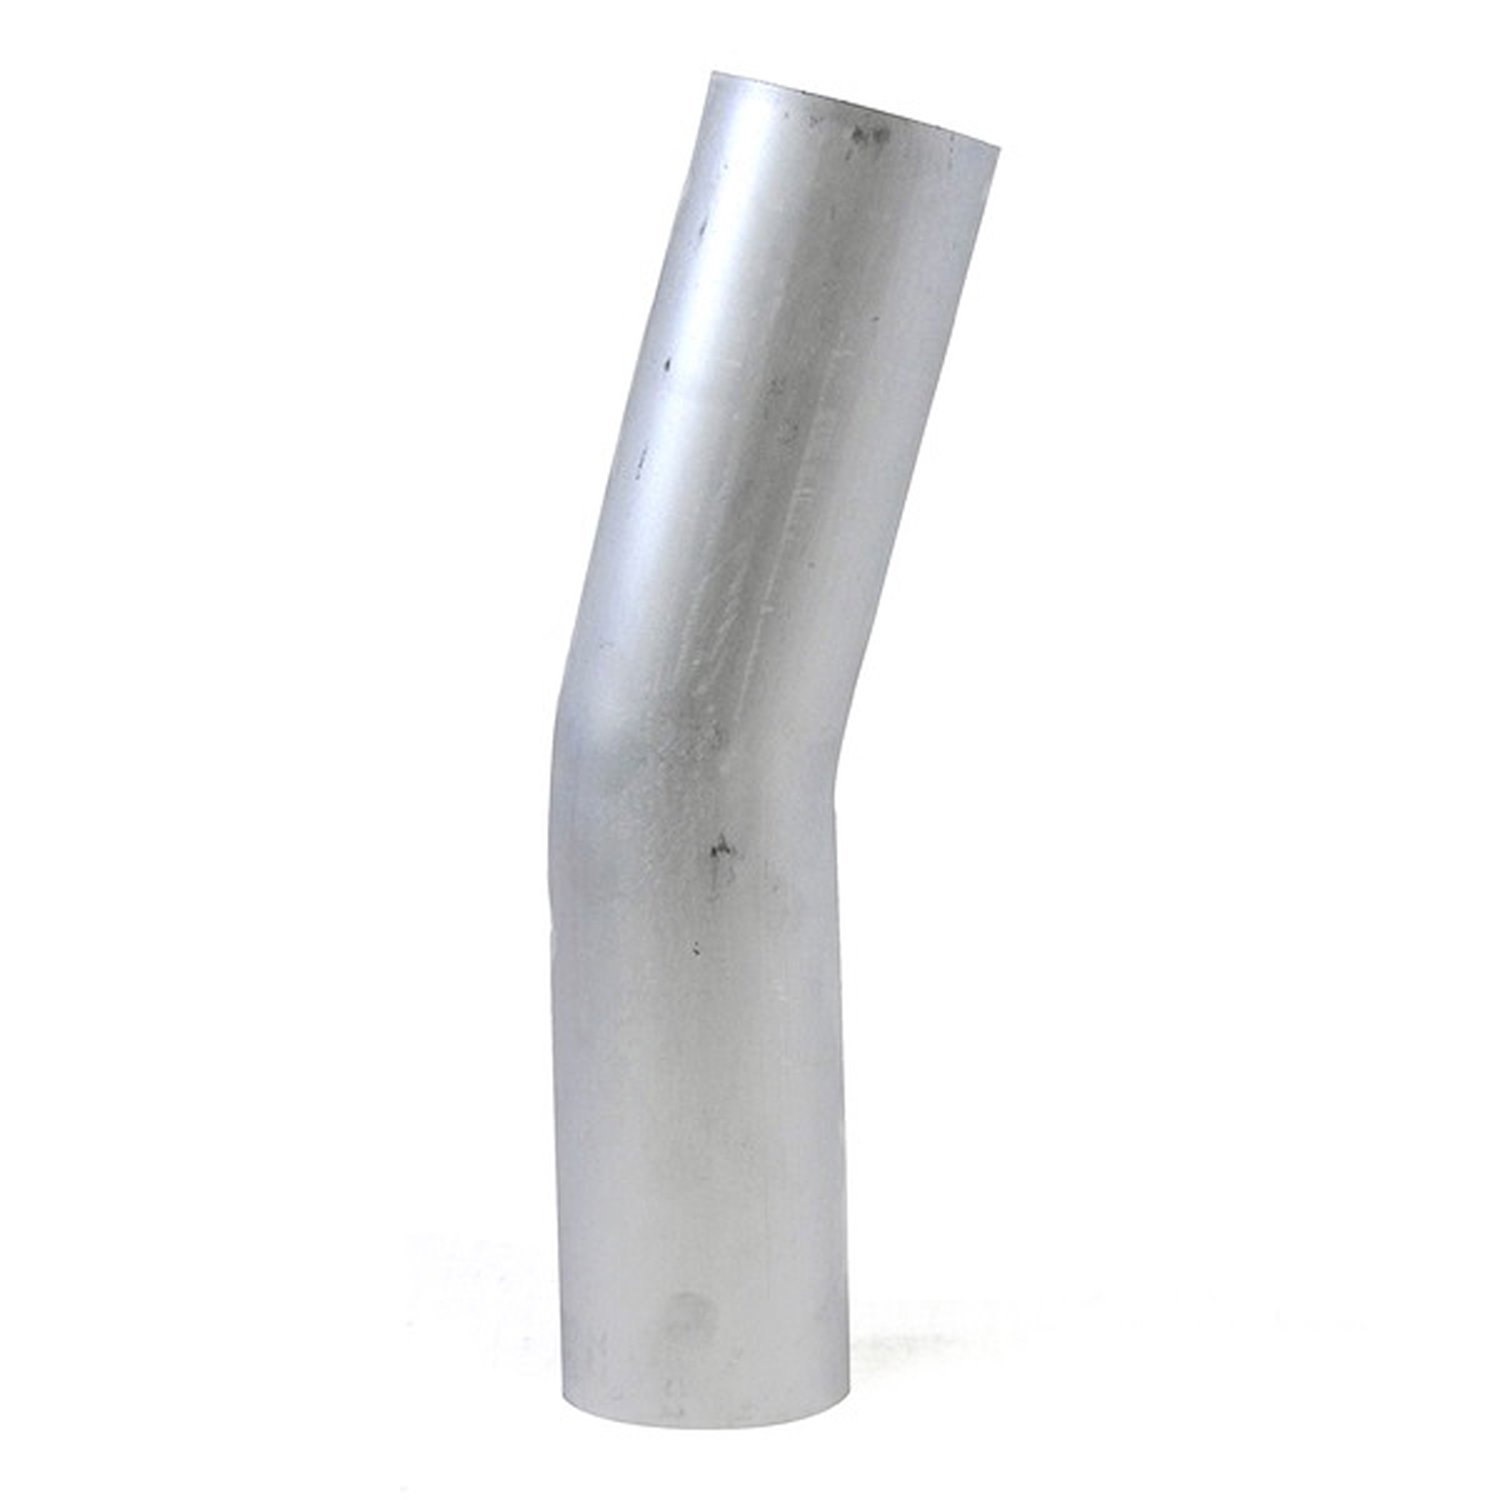 AT15-250-CLR-4 Aluminum Elbow Tube, 6061 Aluminum, 15-Degree Bend Elbow Tubing, 2-1/2 in. OD, Large Radius, 4 in. CLR